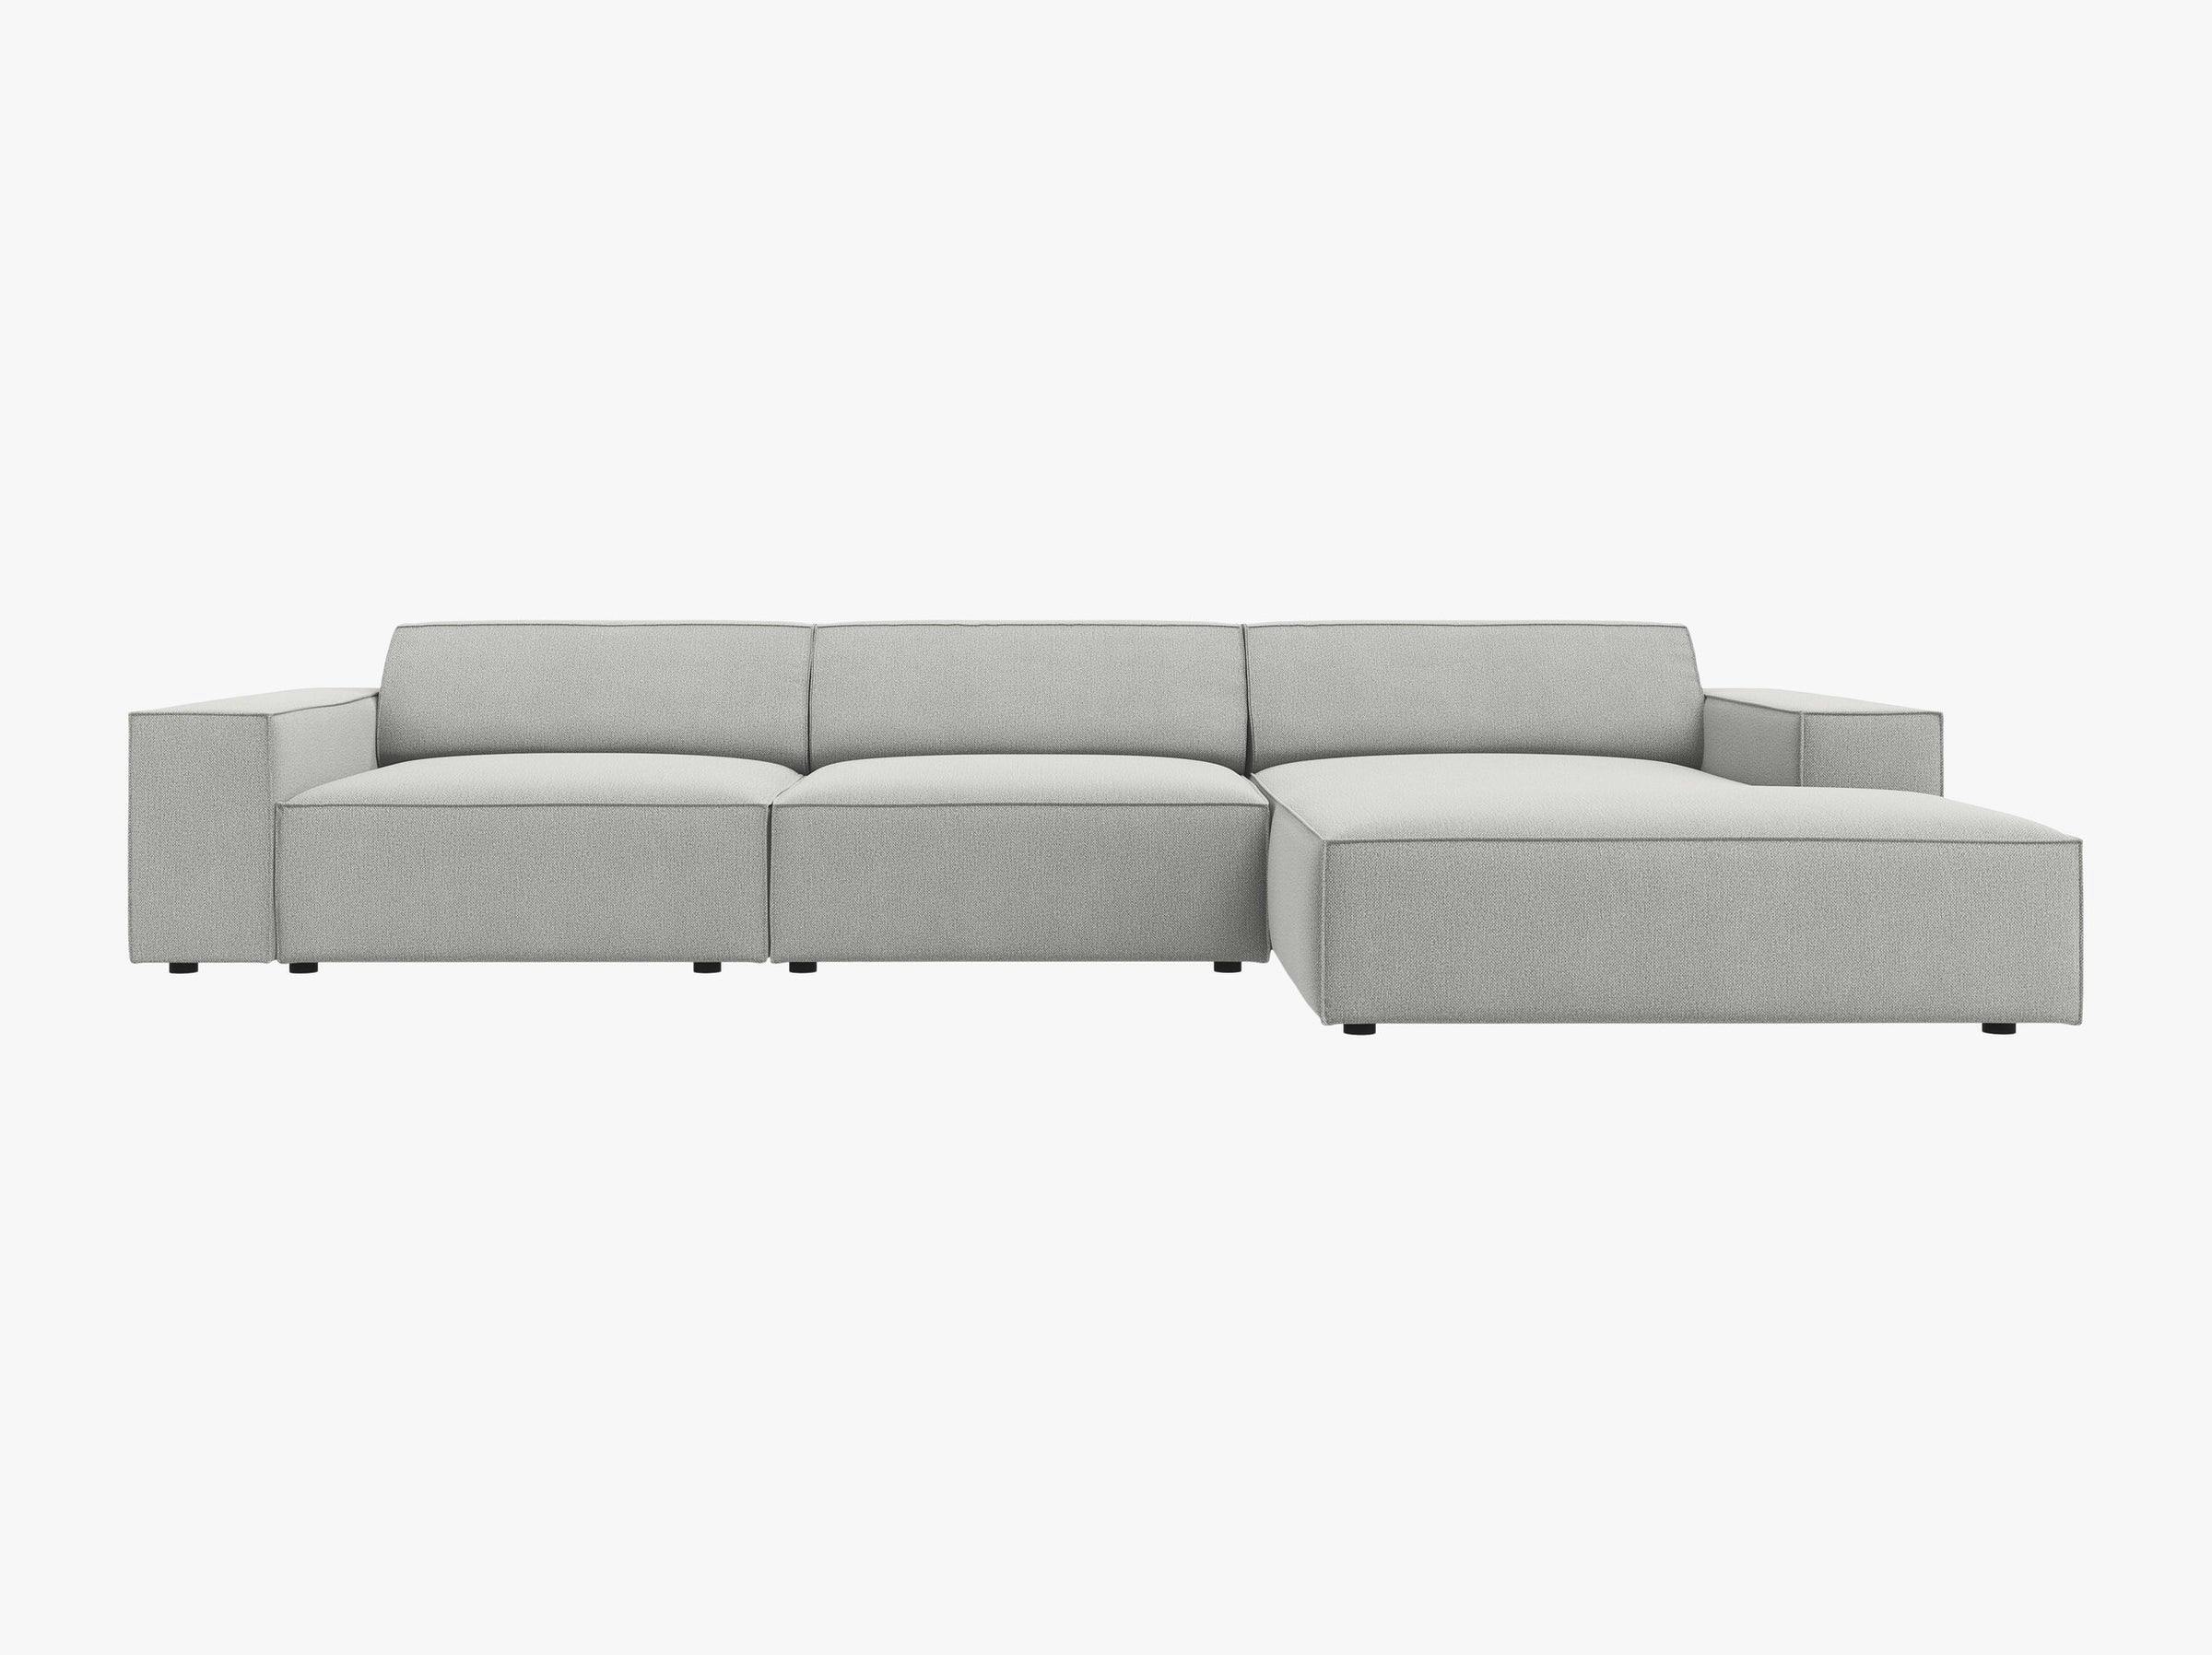 Jodie sofás tejido estructurado gris claro